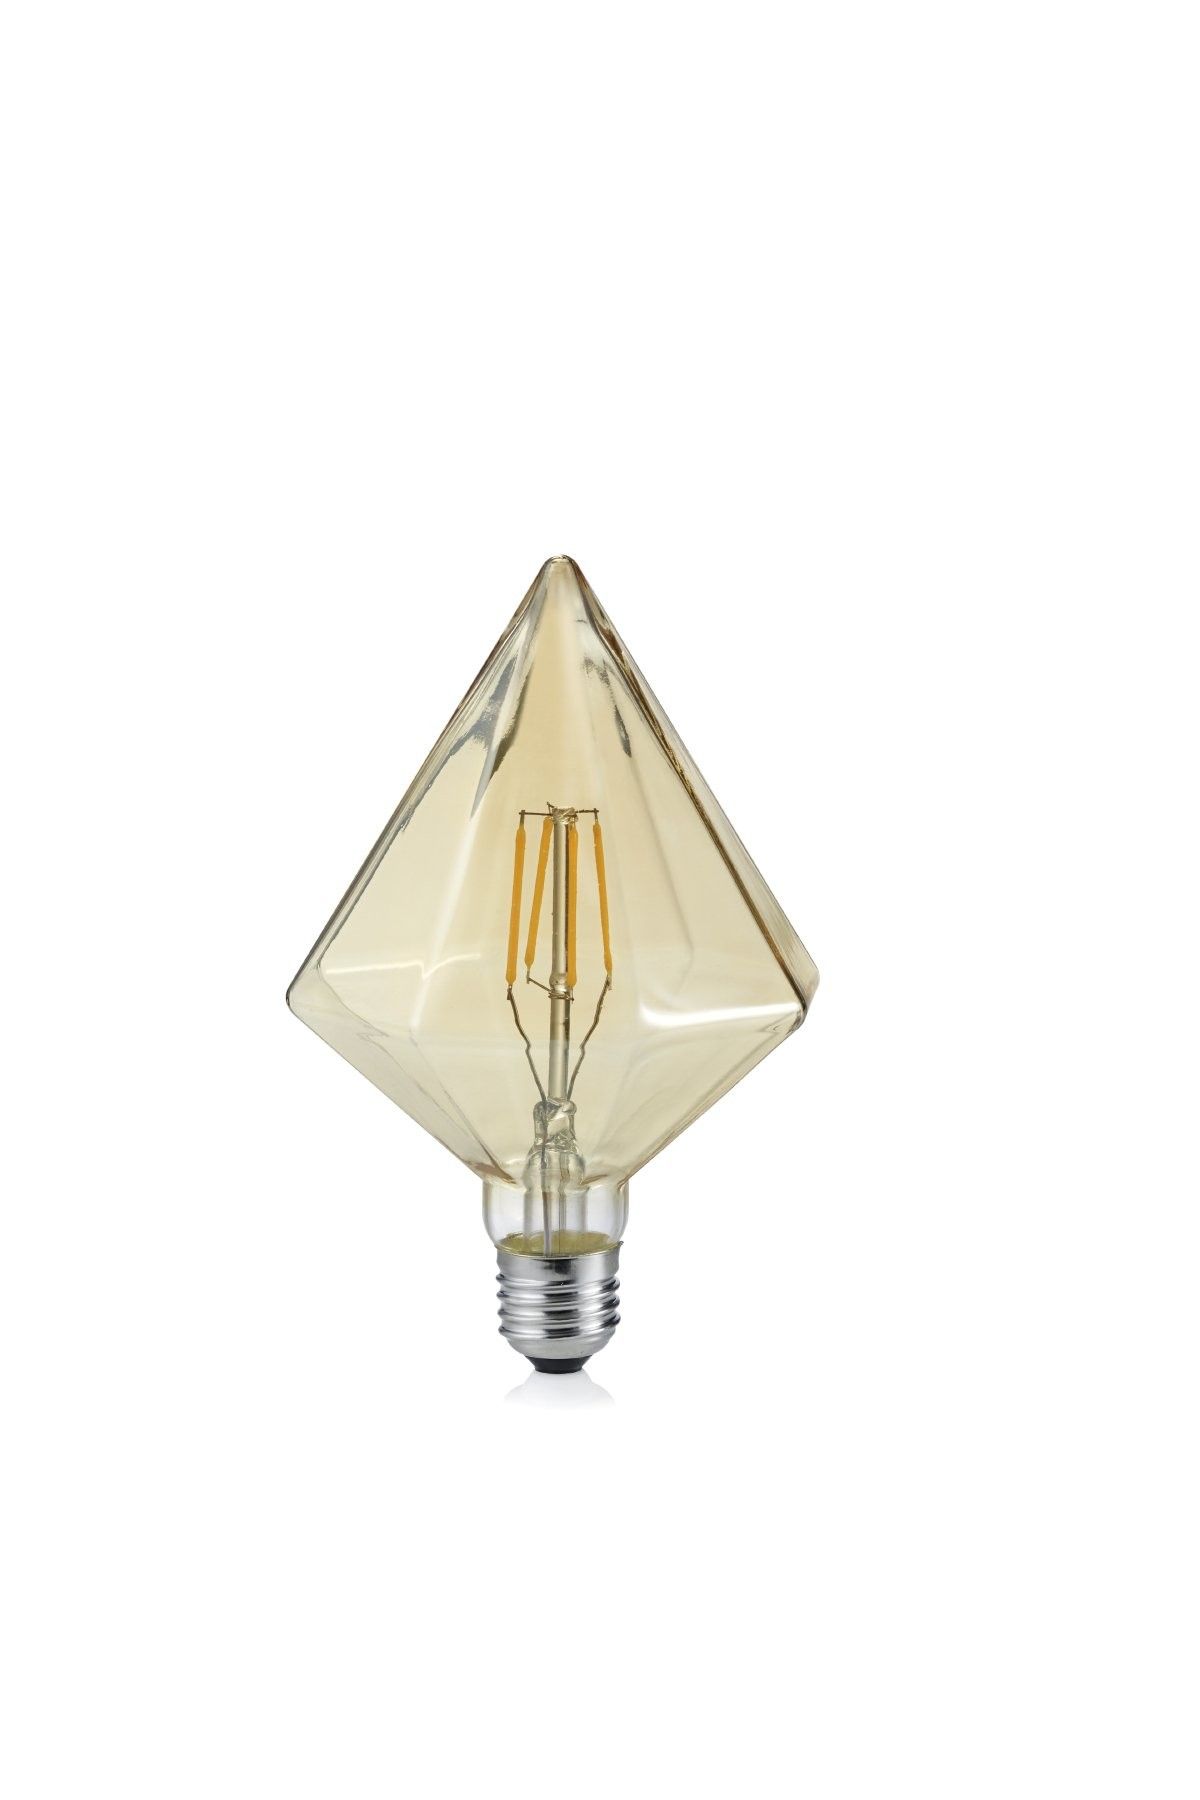 Trio 901-479 LED designová filamentová žárovka Kristall 1x4W | E27 | 320lm | 2700K - jantar - Dekolamp s.r.o.